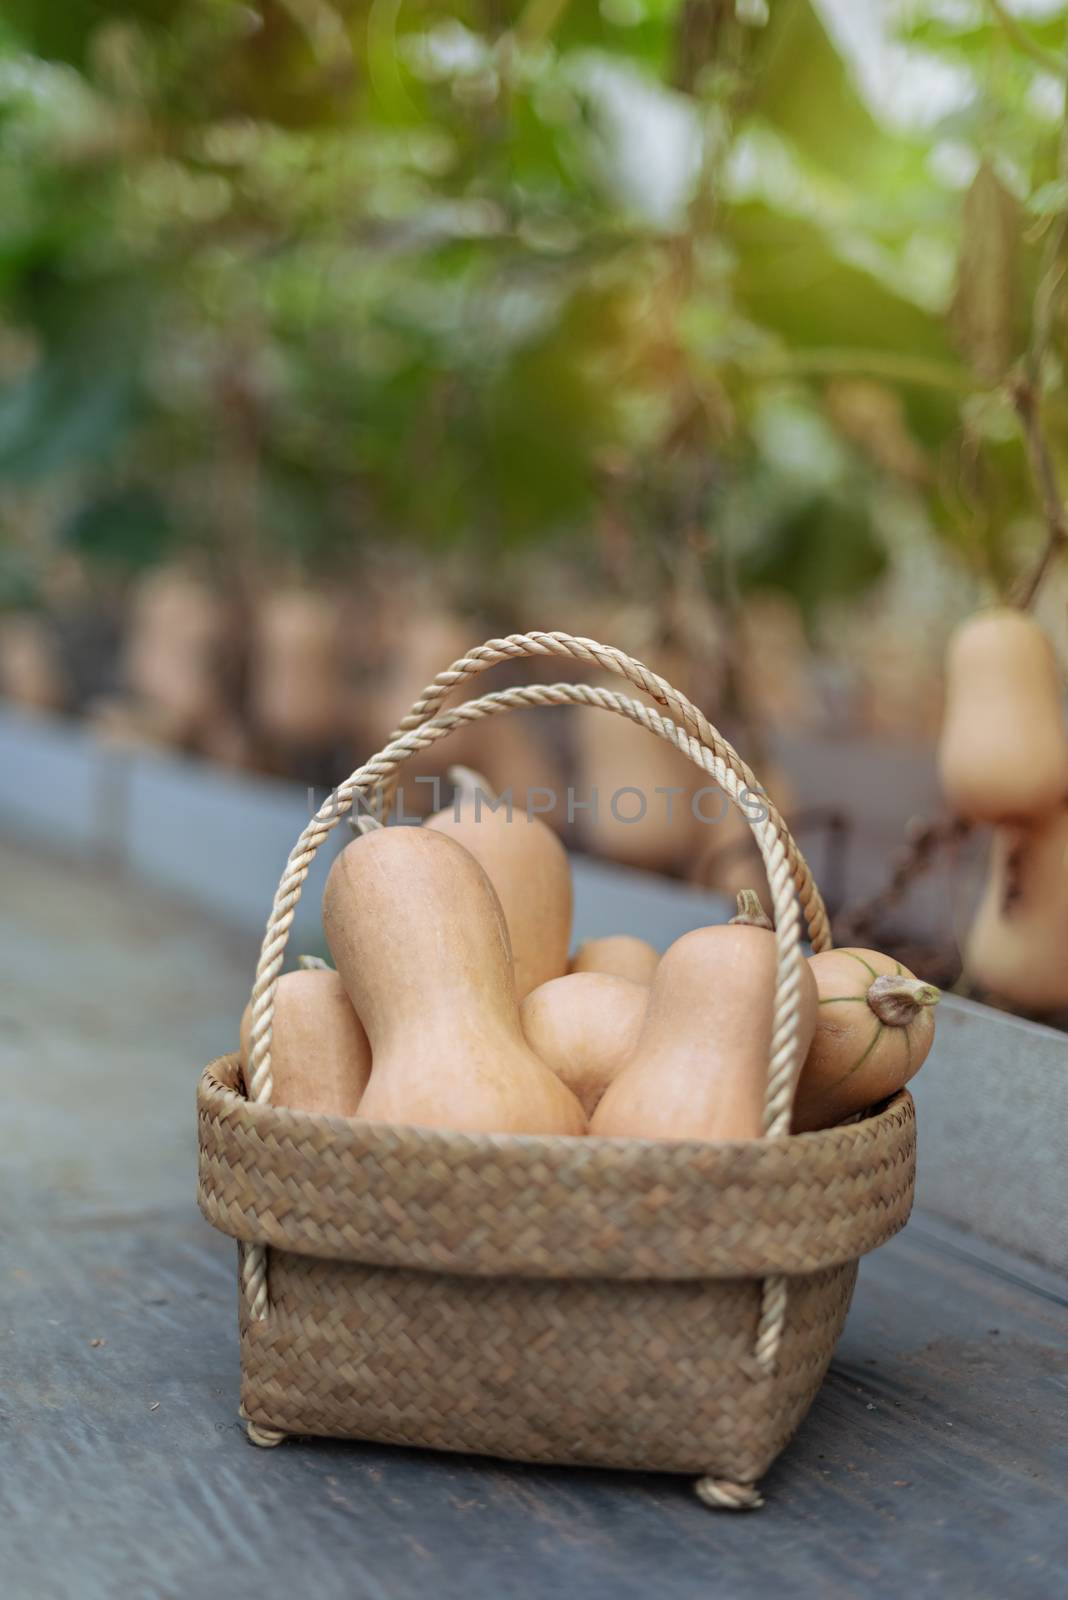 butternut squash in bamboo basket, harvesting fresh vegetables